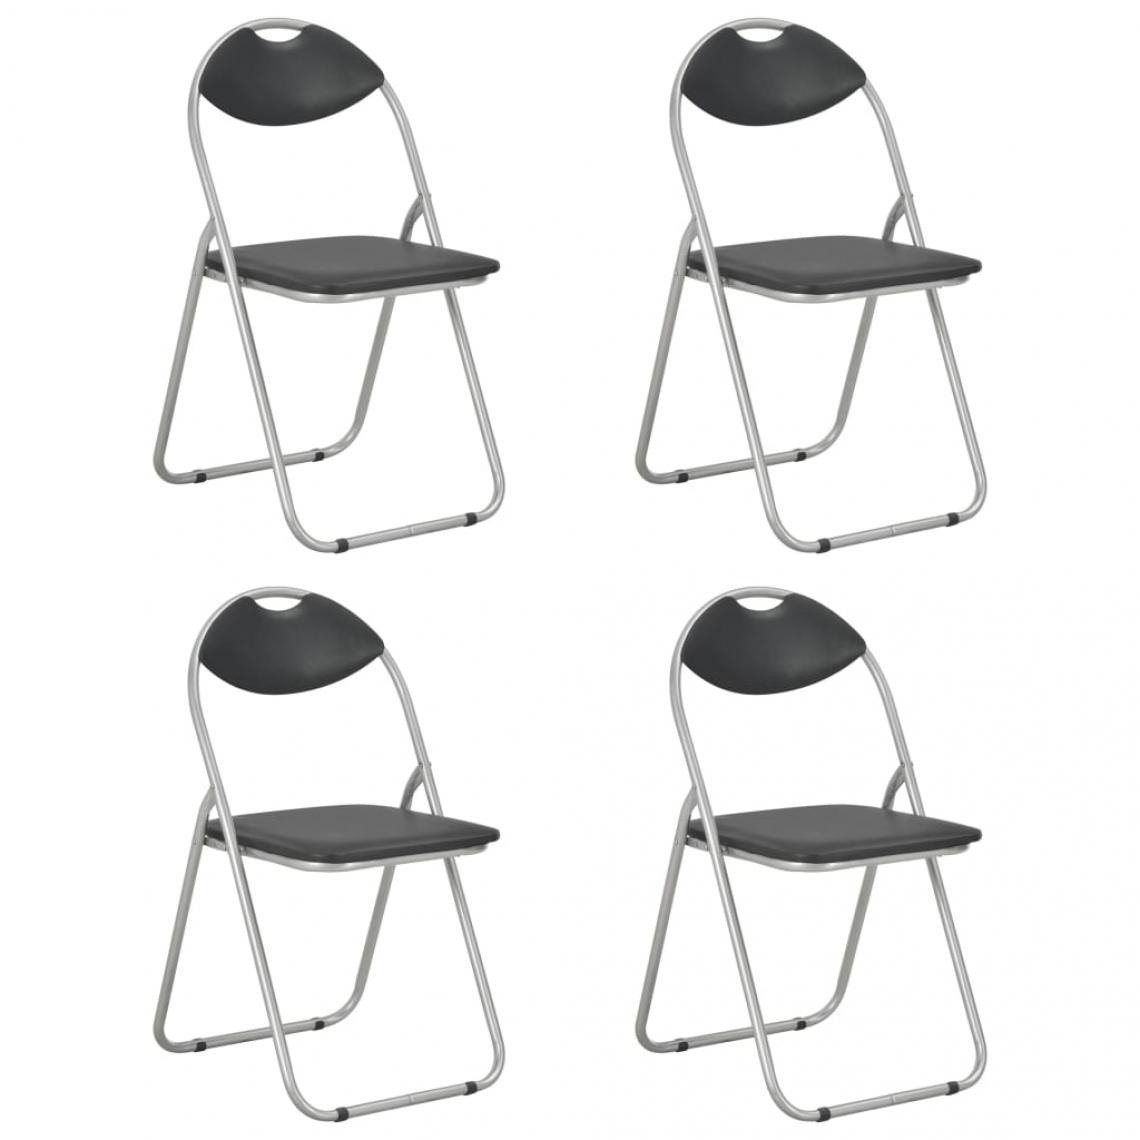 Decoshop26 - Lot de 4 chaises de salle à manger cuisine pliantes design simple similicuir noir CDS021910 - Chaises